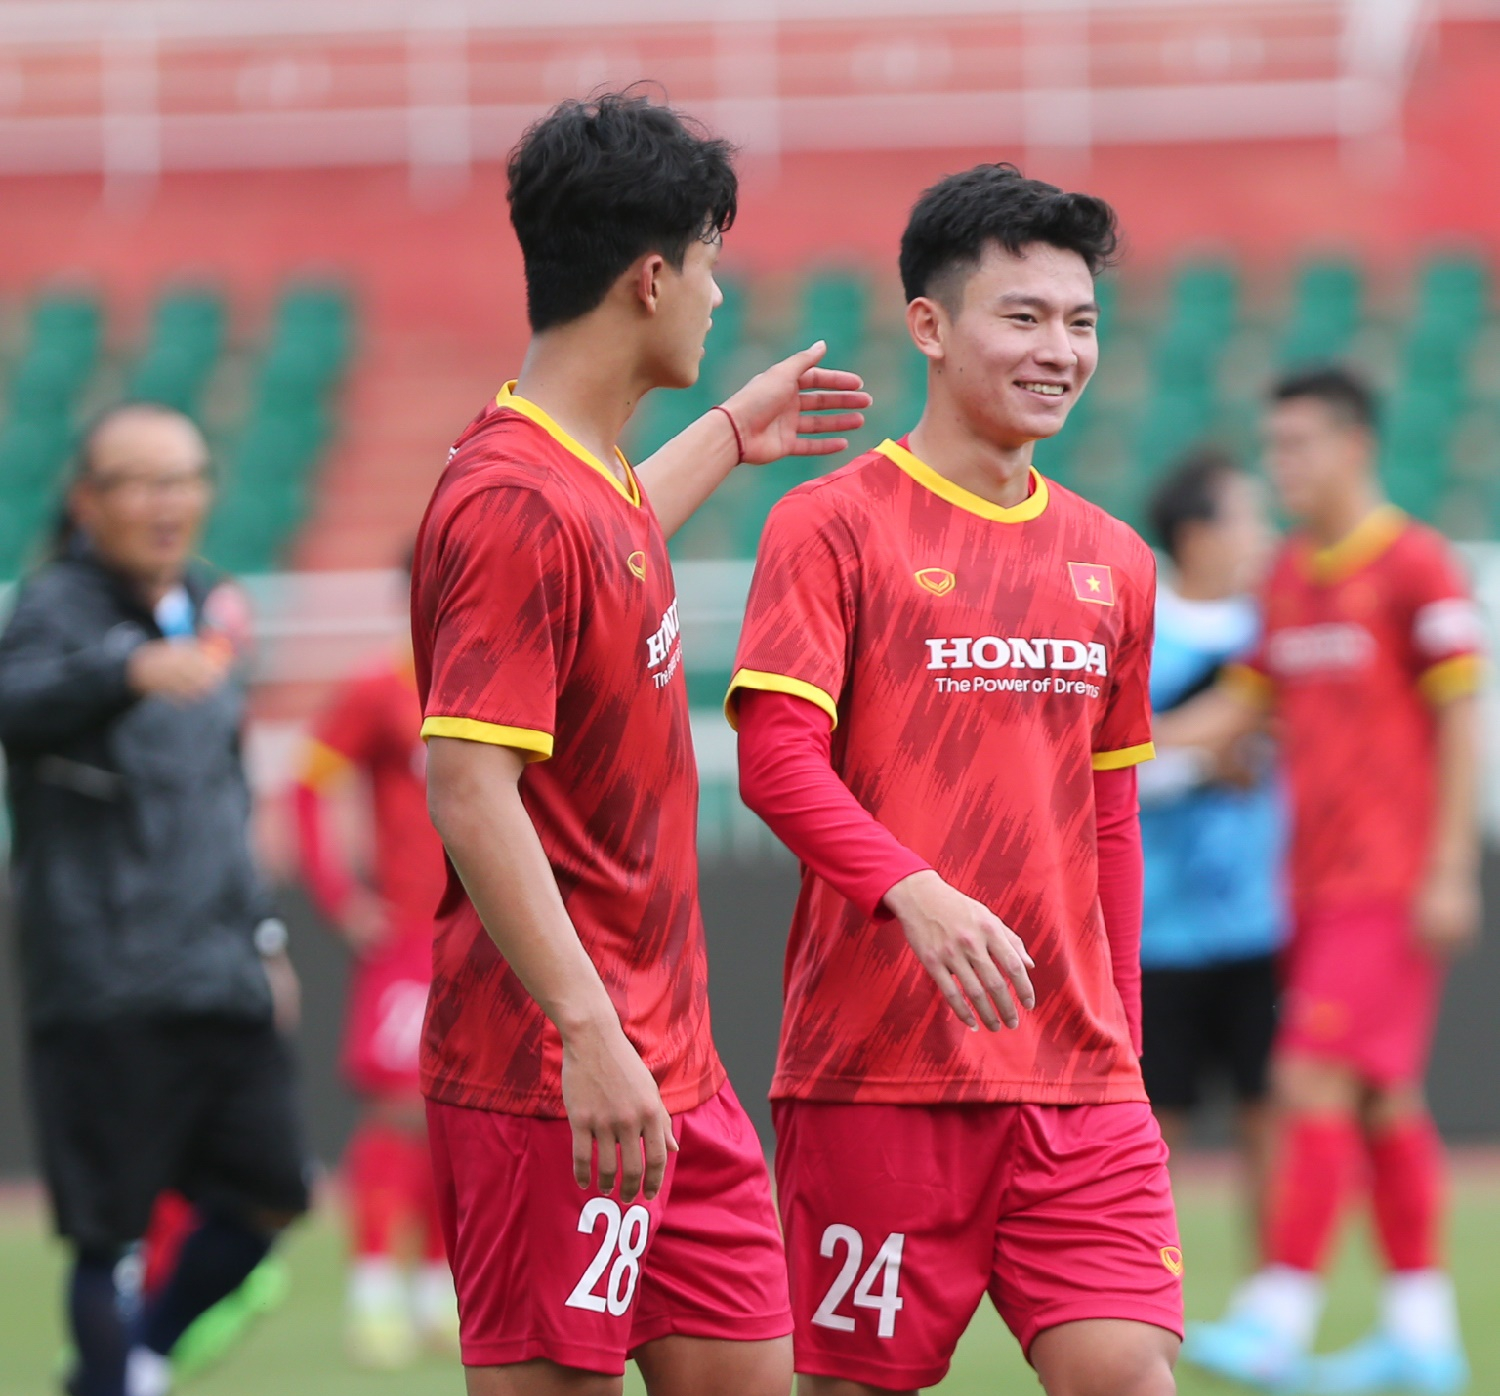 Hùng Dũng đưa ra điều kiện then chốt để Phan Tuấn Tài, Khuất Văn Khang... dự AFF Cup 2022 - Ảnh 1.